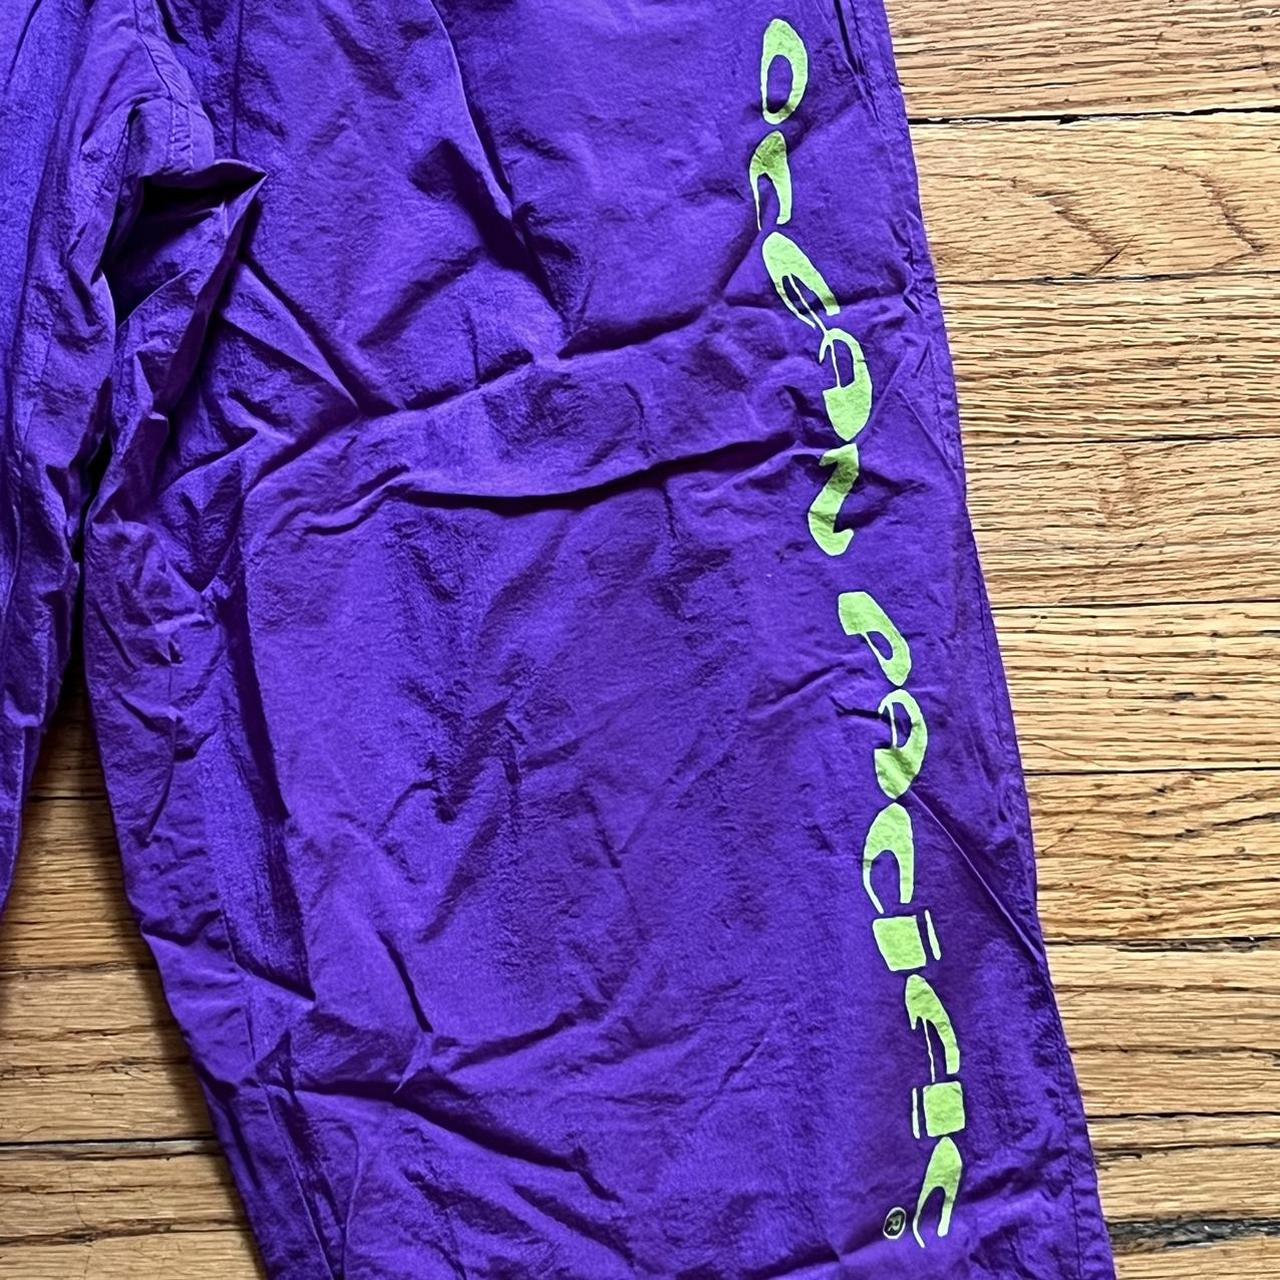 Vintage 90s Ocean Pacific nylon pants in purple and... - Depop